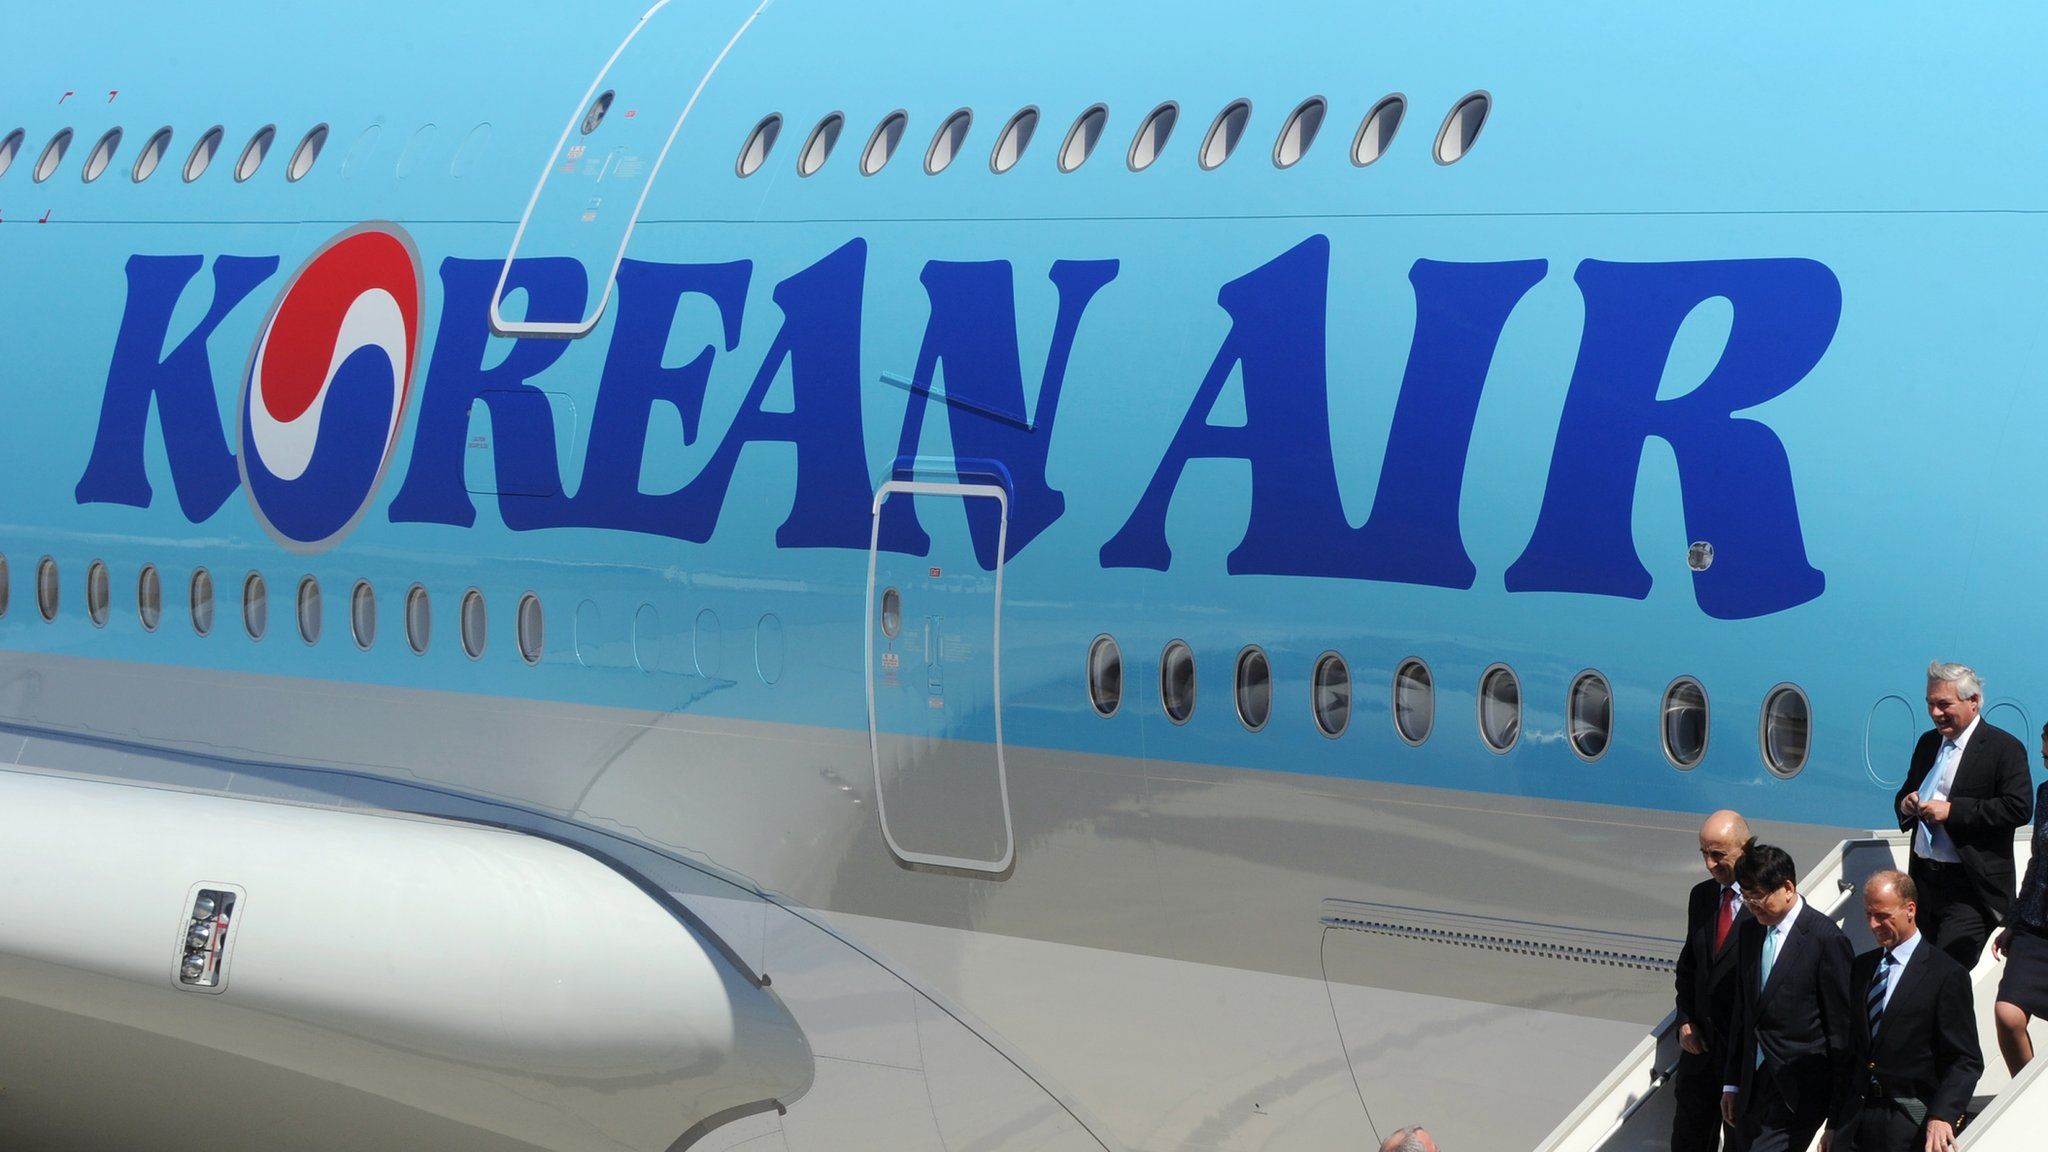 Korean Air Lines plane (file image)